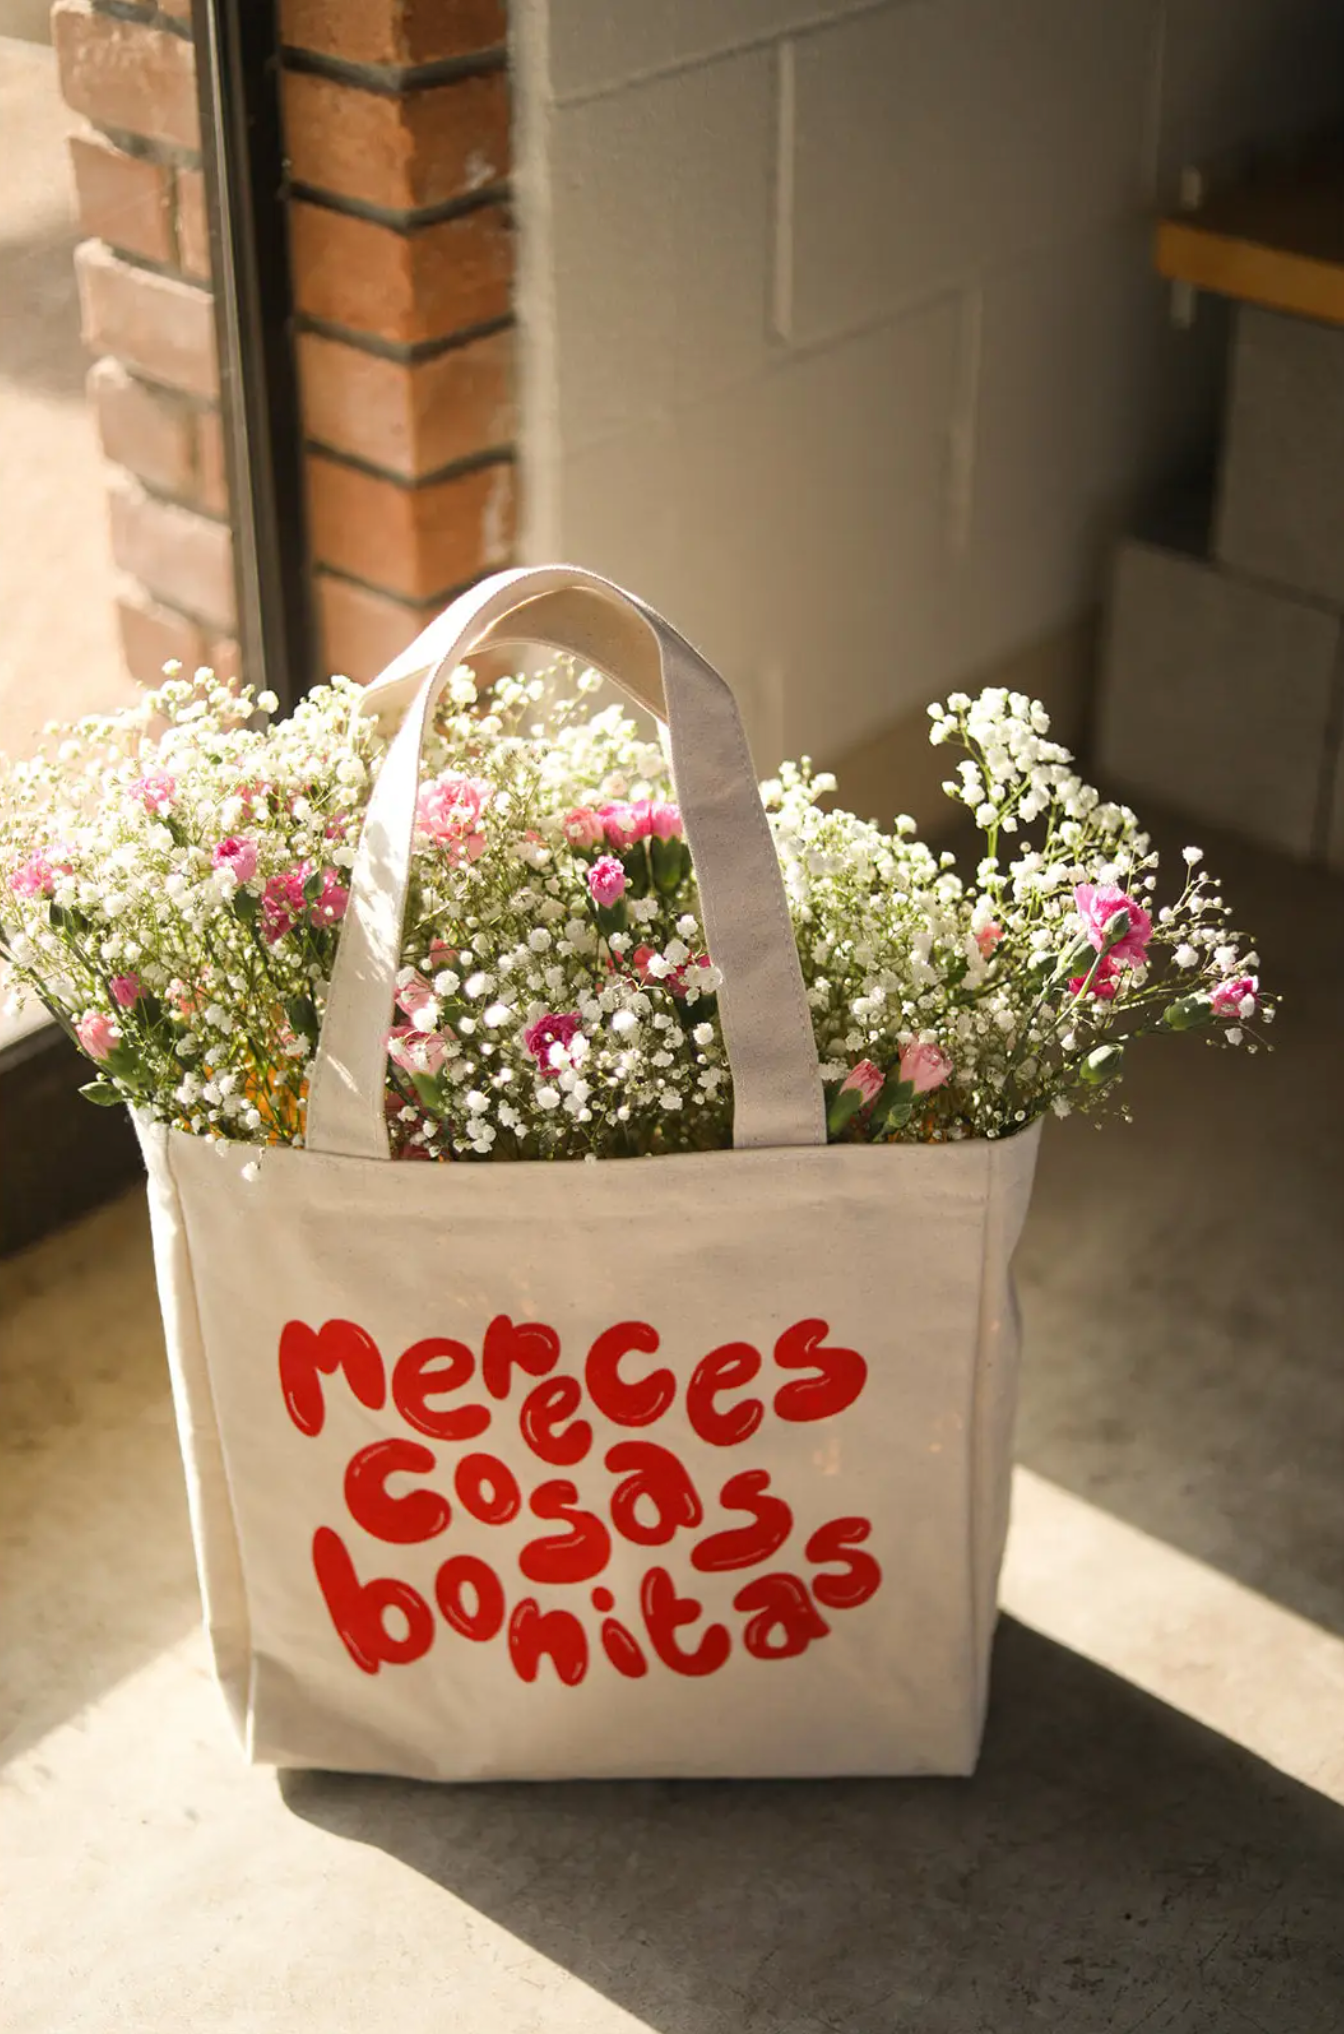 Mereces Cosas Bonitas (you deserve nice things) Tote Bag